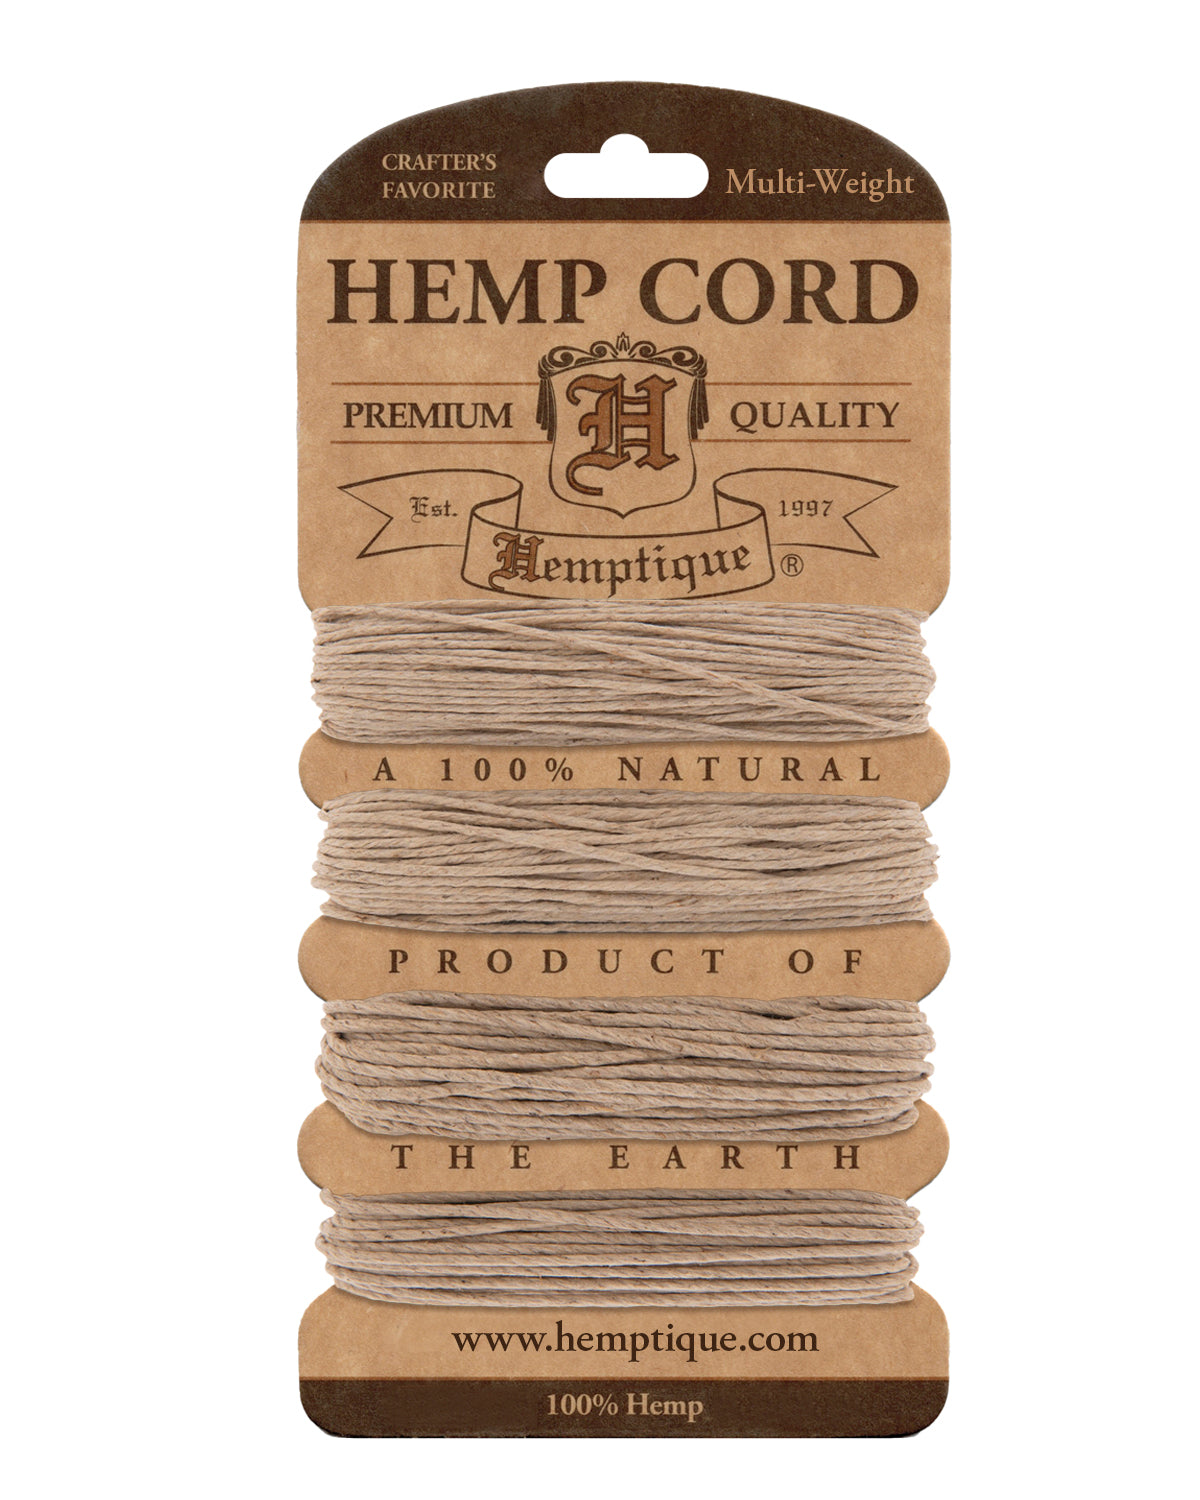 Hemptique Multi-Weight Hemp Cord Card Set #10 #20 #36 #48  - Natural